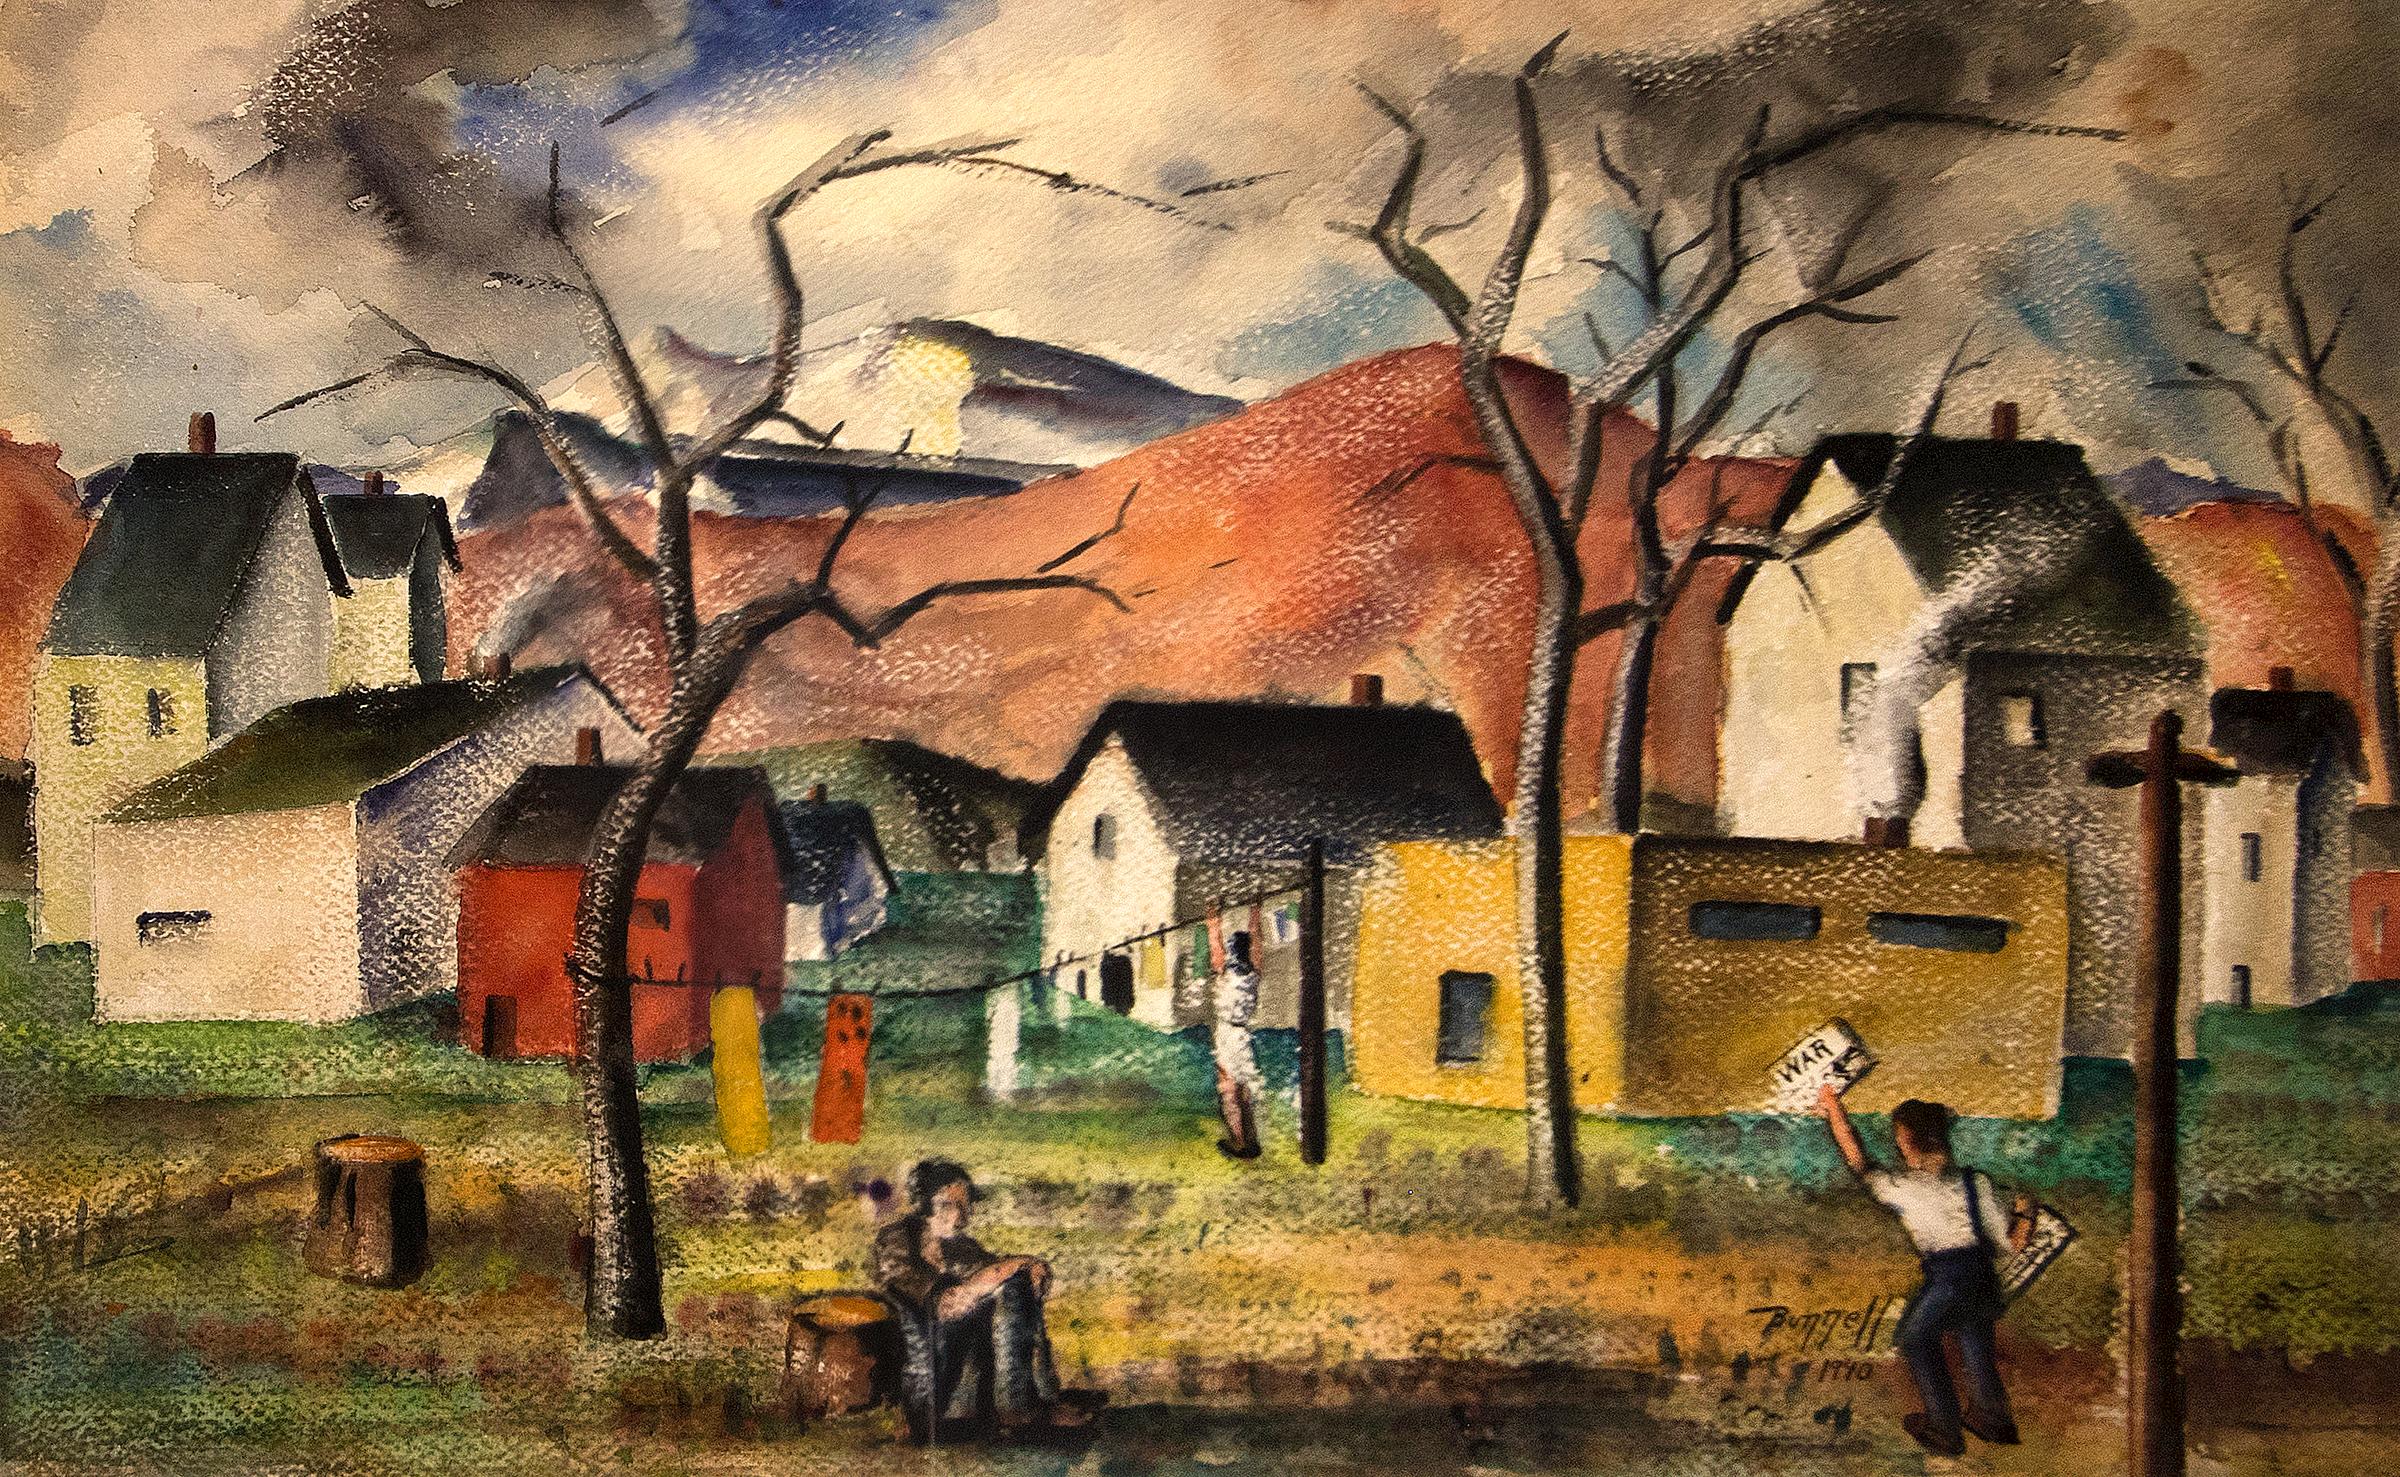 Gerahmte figurative Dorflandschaft mit Figuren, Häusern und Bergen, WPA 1940er Jahre – Art von Charles Ragland Bunnell